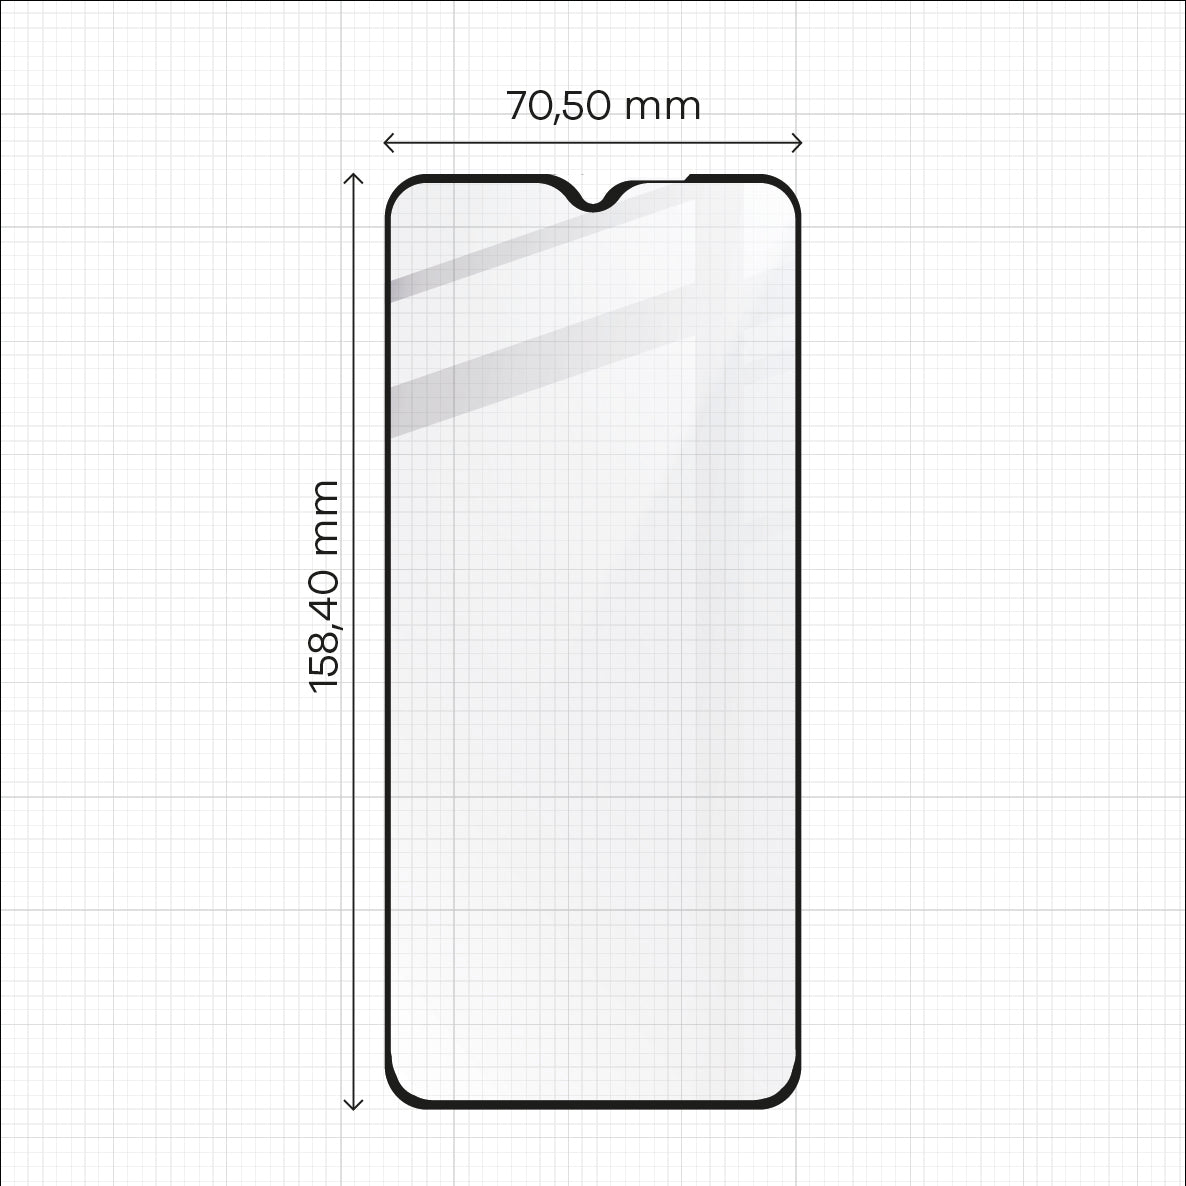 Gehärtetes Glas Bizon Glass Edge für Galaxy A32 5G, Schwarz